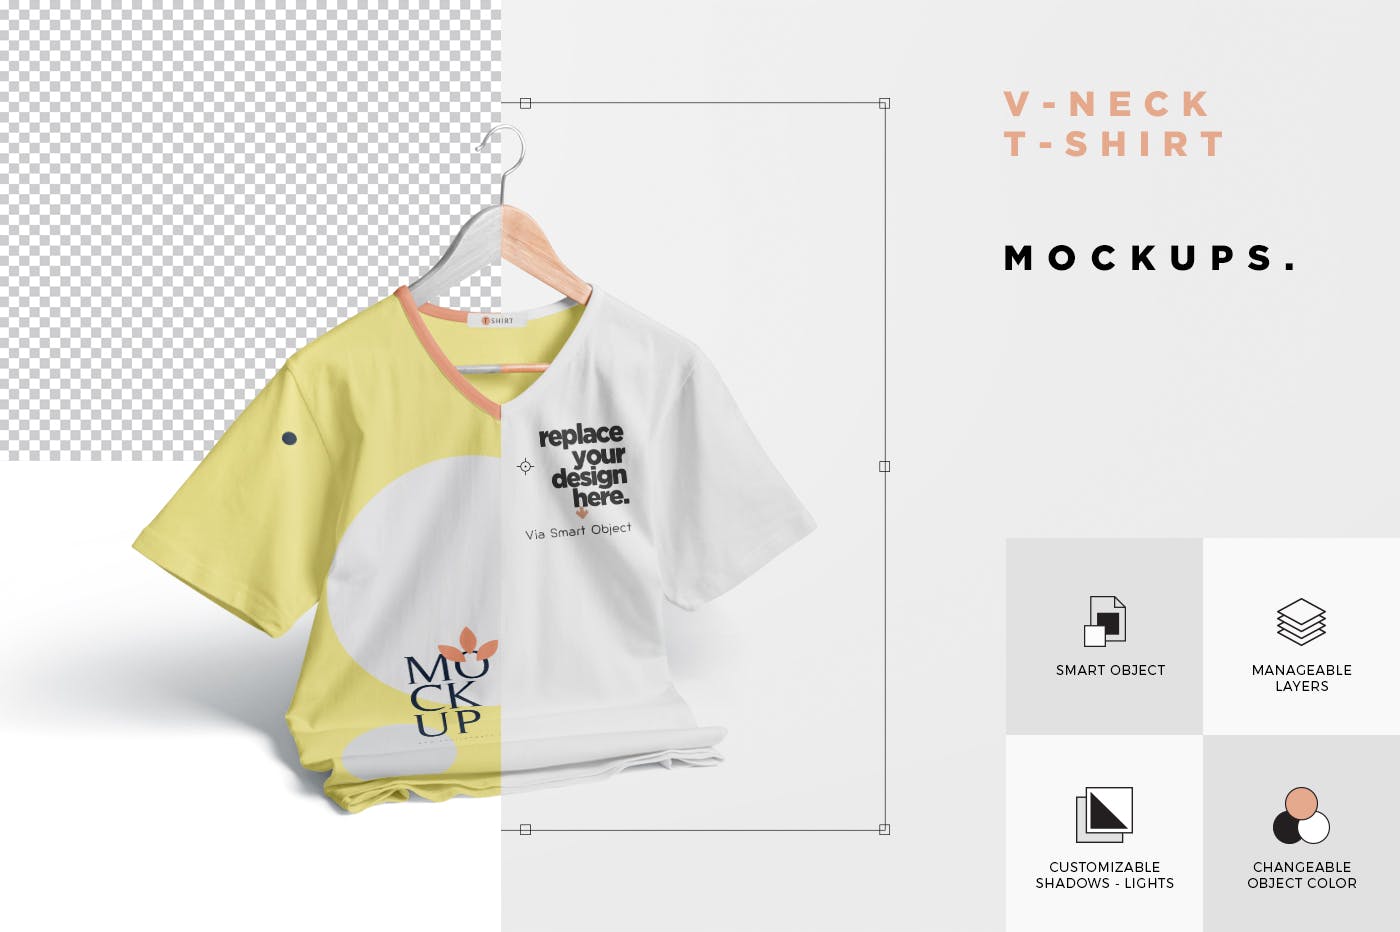 V领T恤服装印花设计效果图样机 V-Neck T-Shirt Mockups插图5